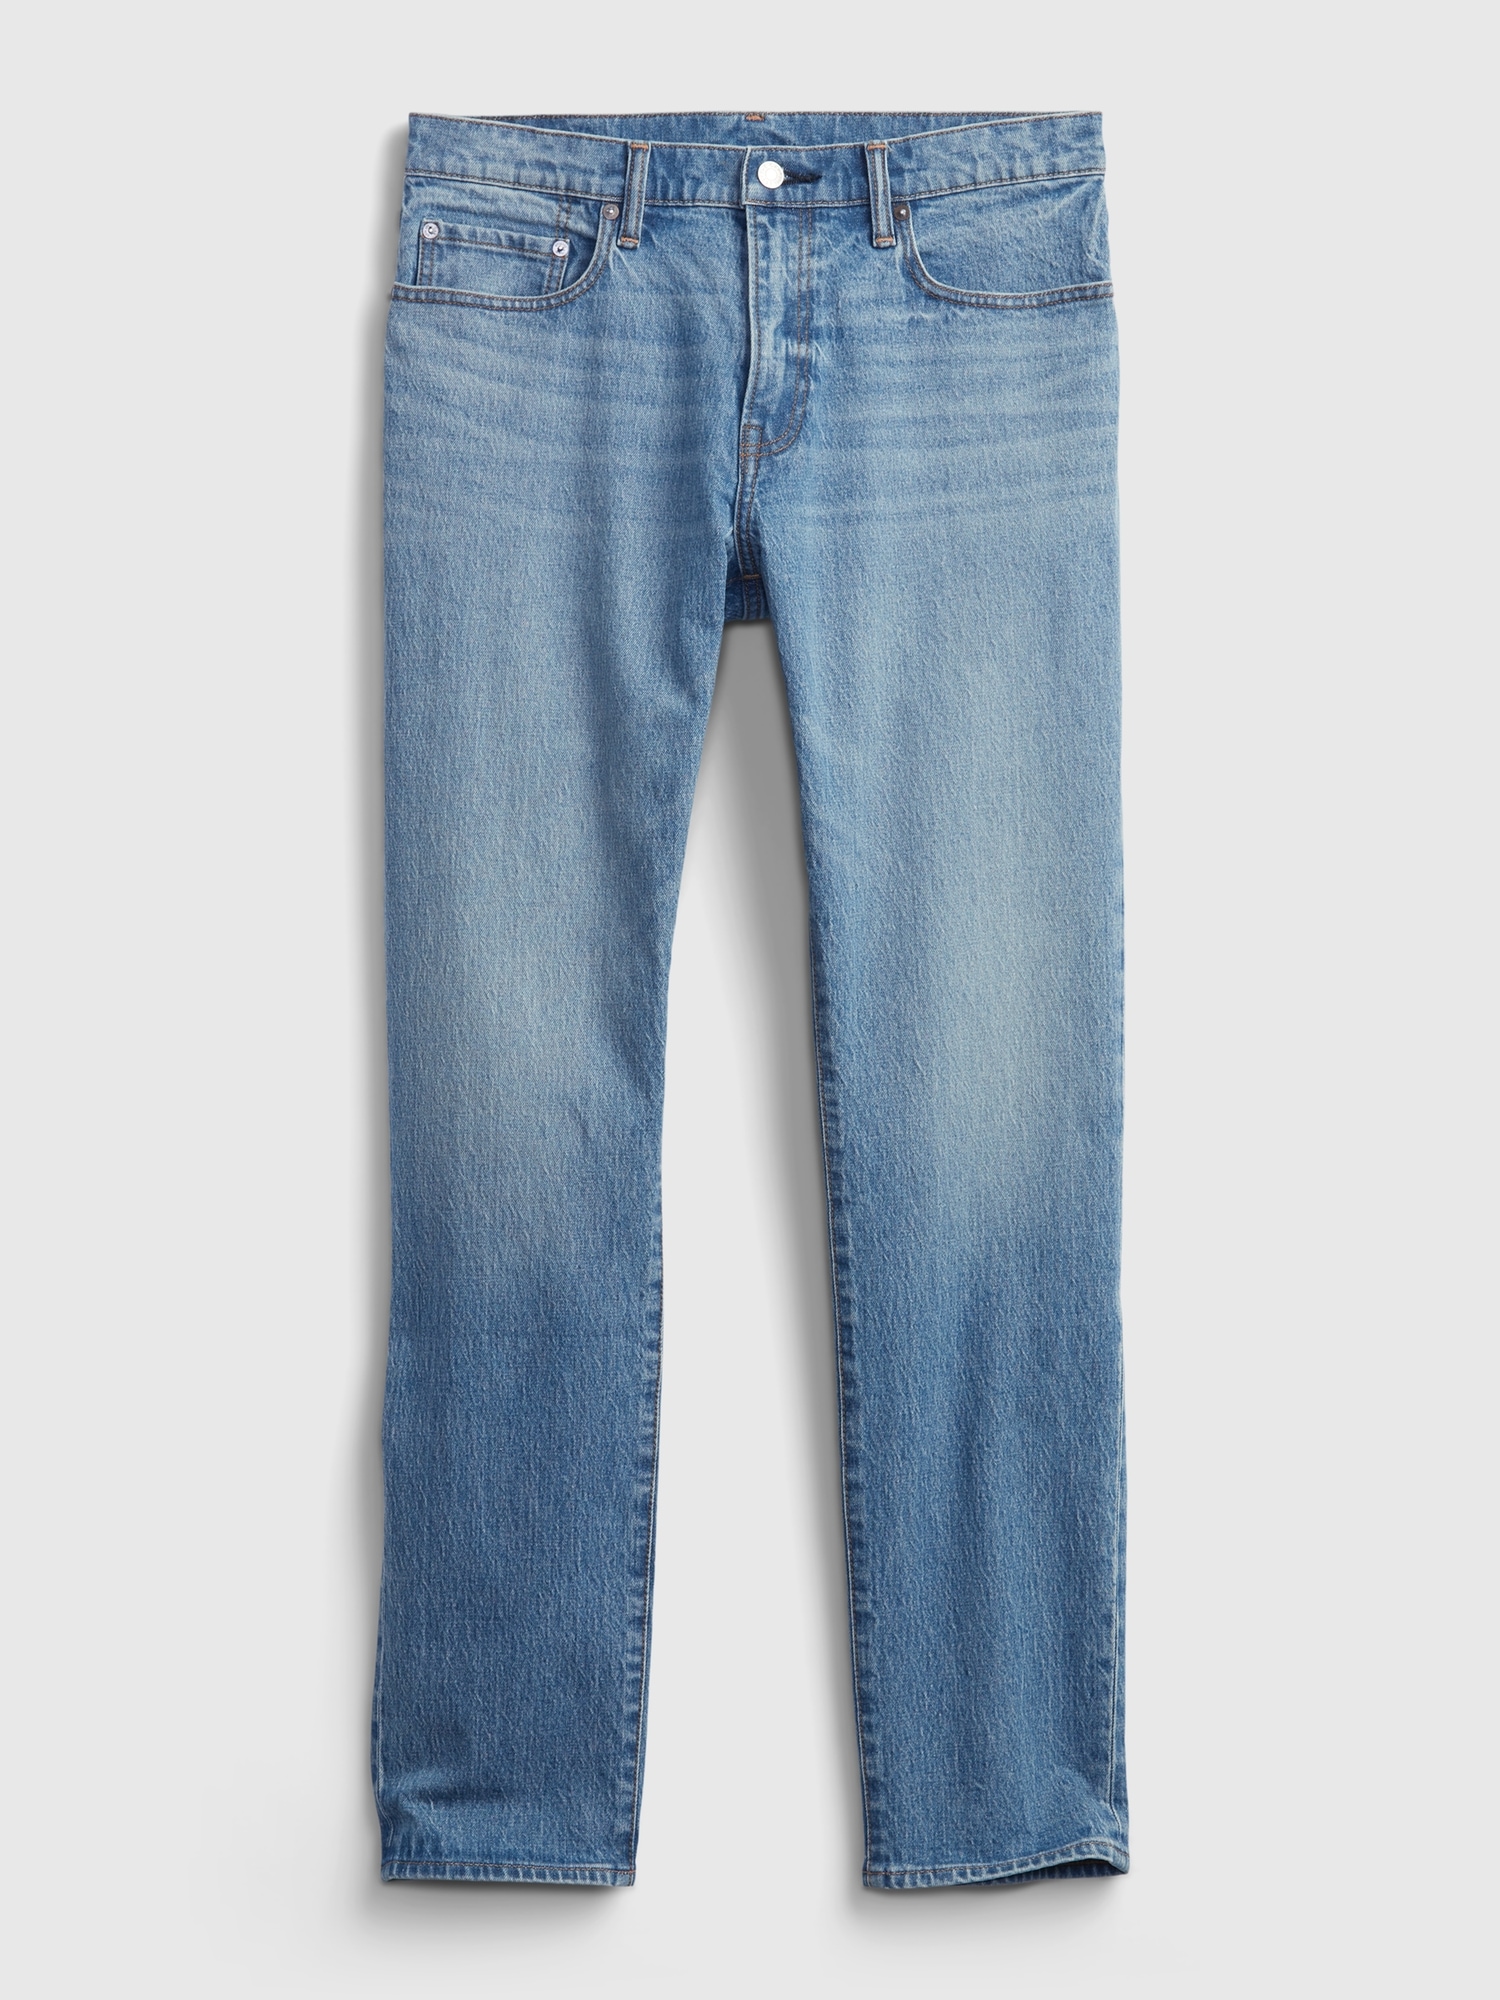 GAP Mens Soft Wear Slim Fit Jeans, Light Wash, 36W x 34L US at